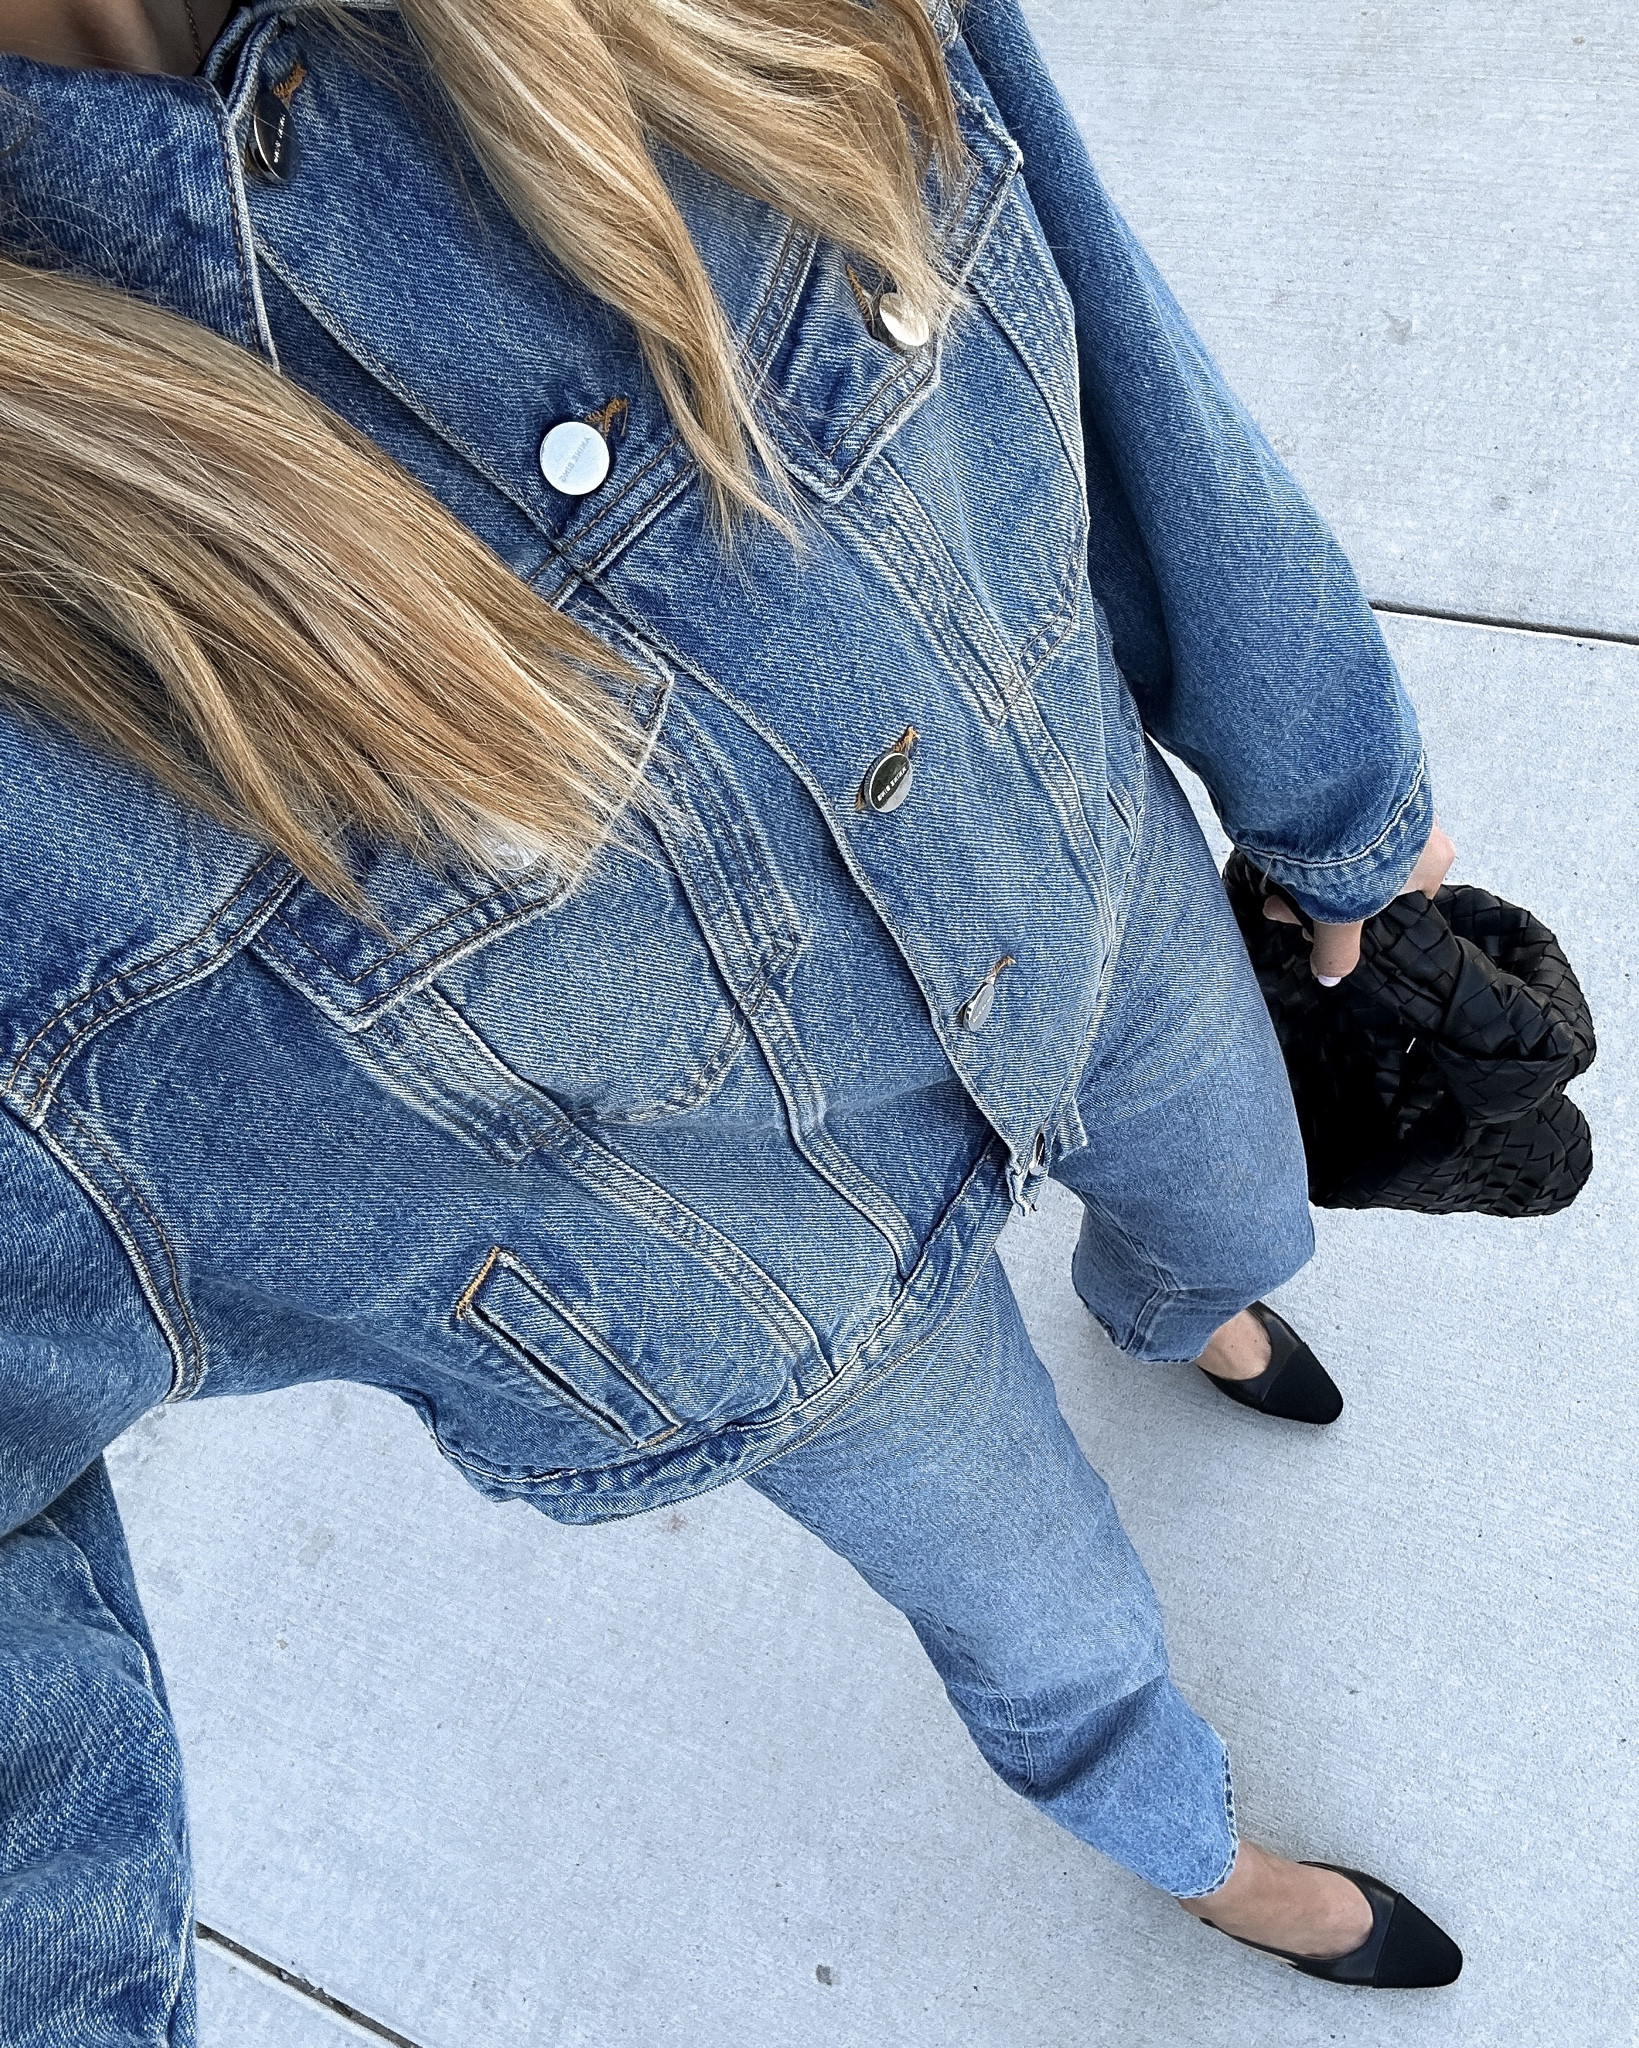 How to Dress Up Jean Shorts With a Black Blazer + Chanel Slingbacks -  Fashion Jackson